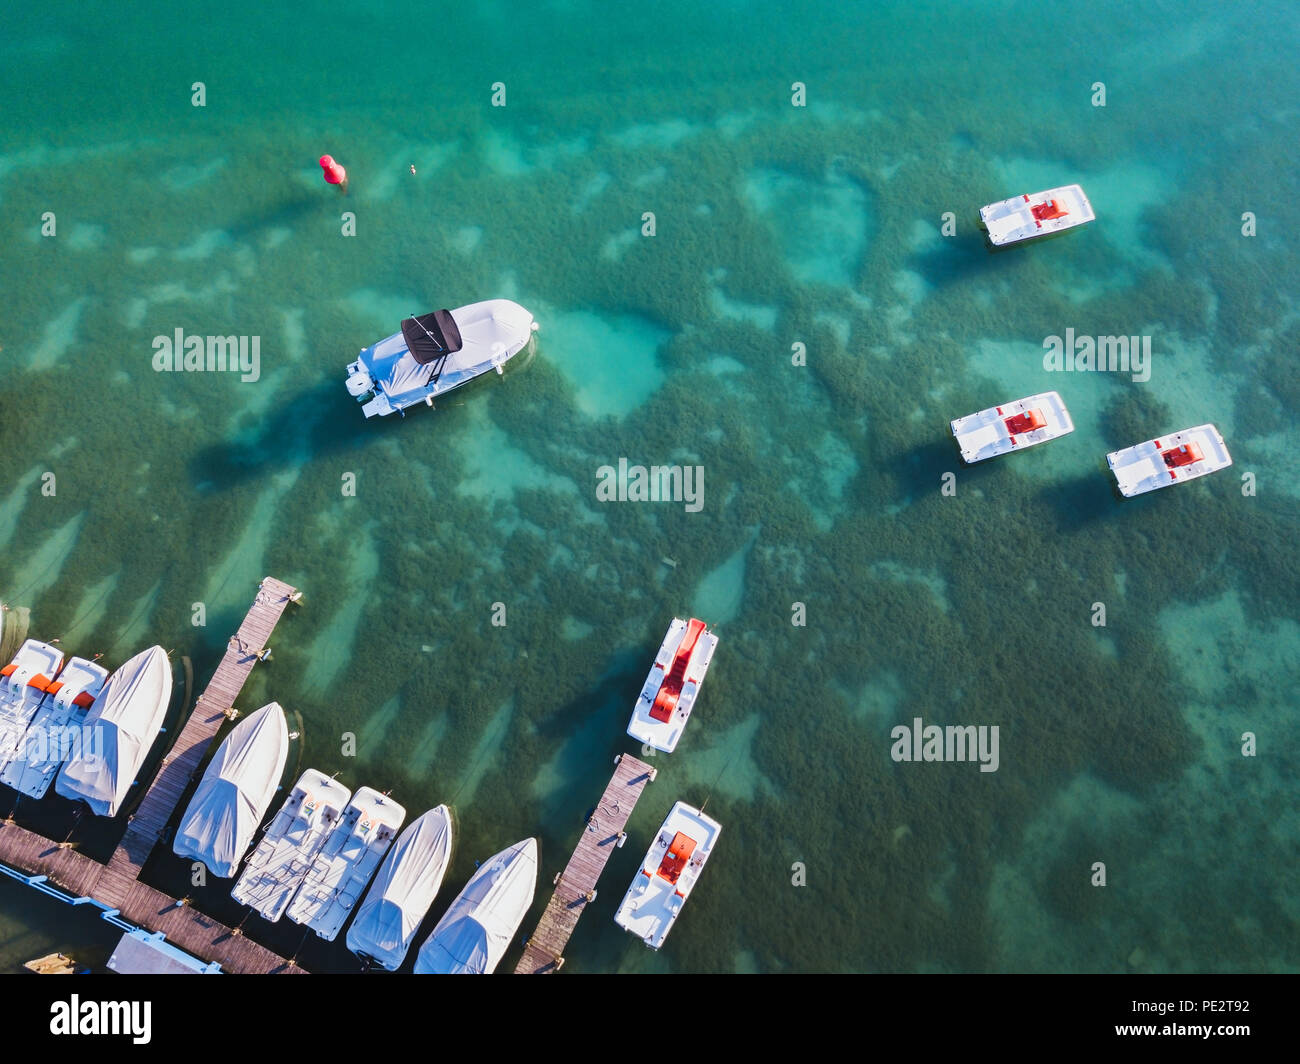 Le lac d'Annecy, paysage aérien Vue de dessus de bateaux dans l'eau bleue turquoise de drone, activités de loisirs d'été Banque D'Images